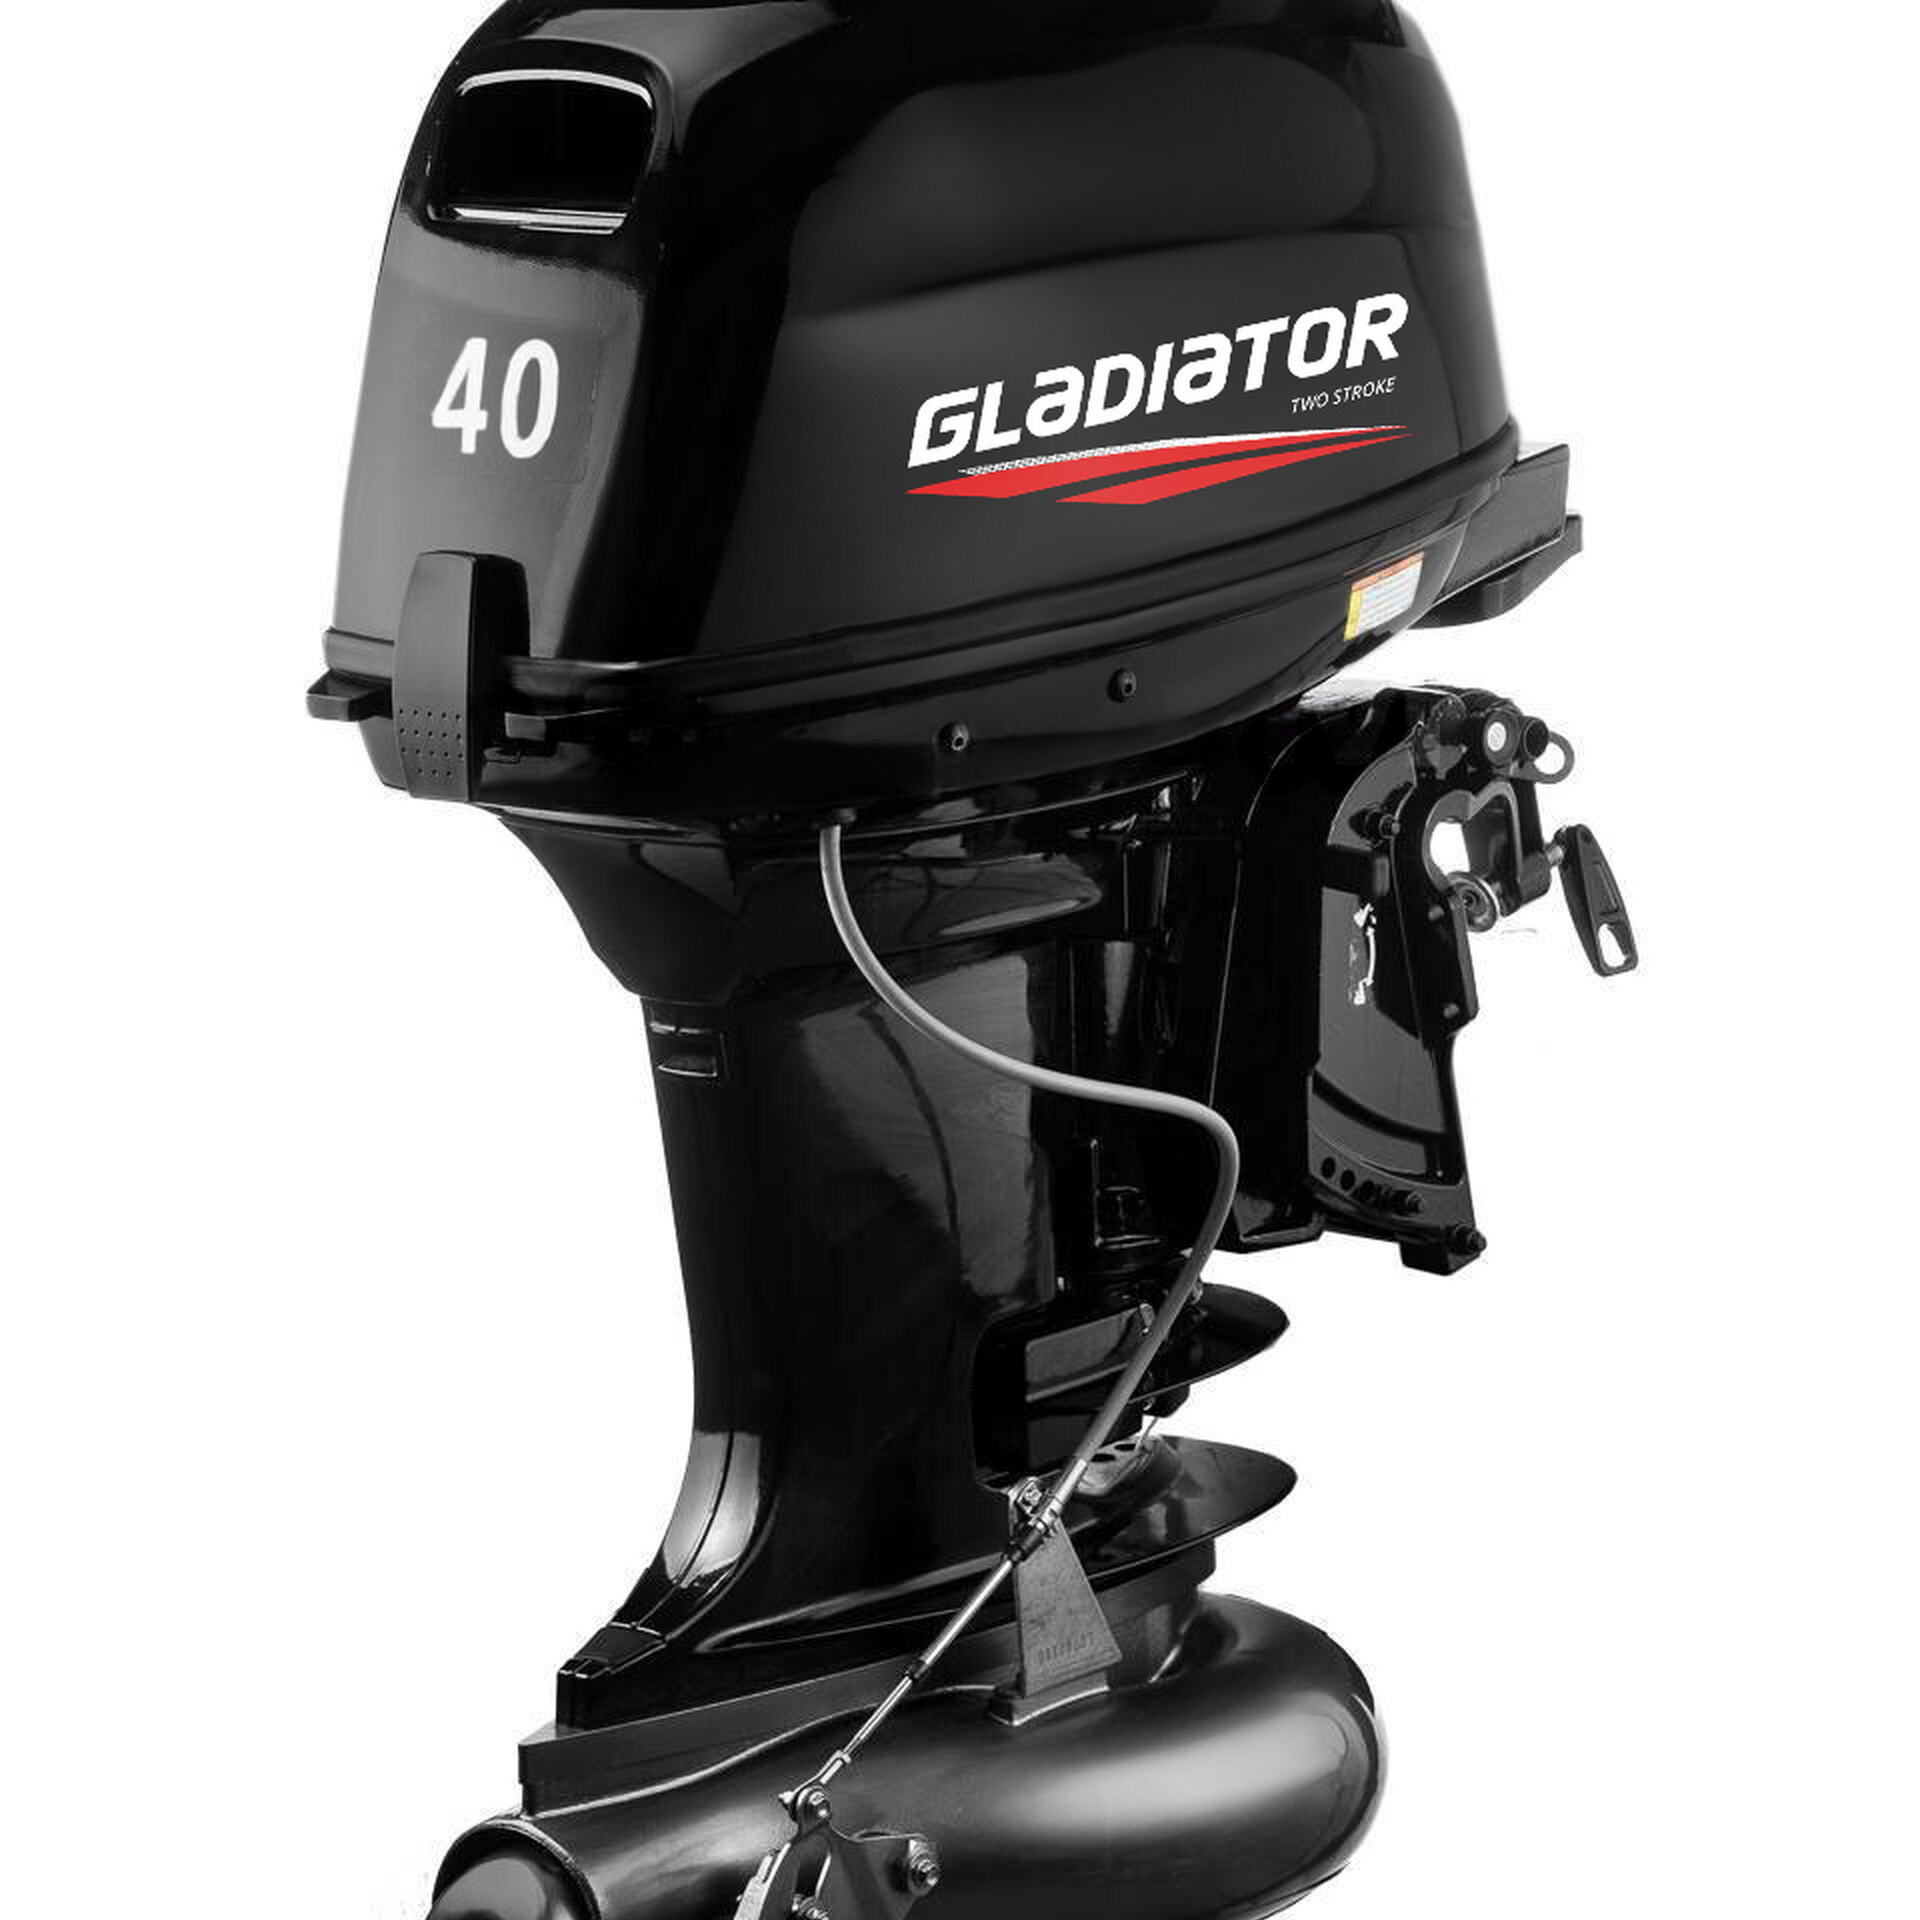 Водометы гладиатор. Мотор Gladiator g40fhs (водомет). Лодочный мотор Гладиатор 40 водомет. Лодочный мотор Gladiator g9.9fhs водомет. Gladiator g40fh (водомет) производитель.